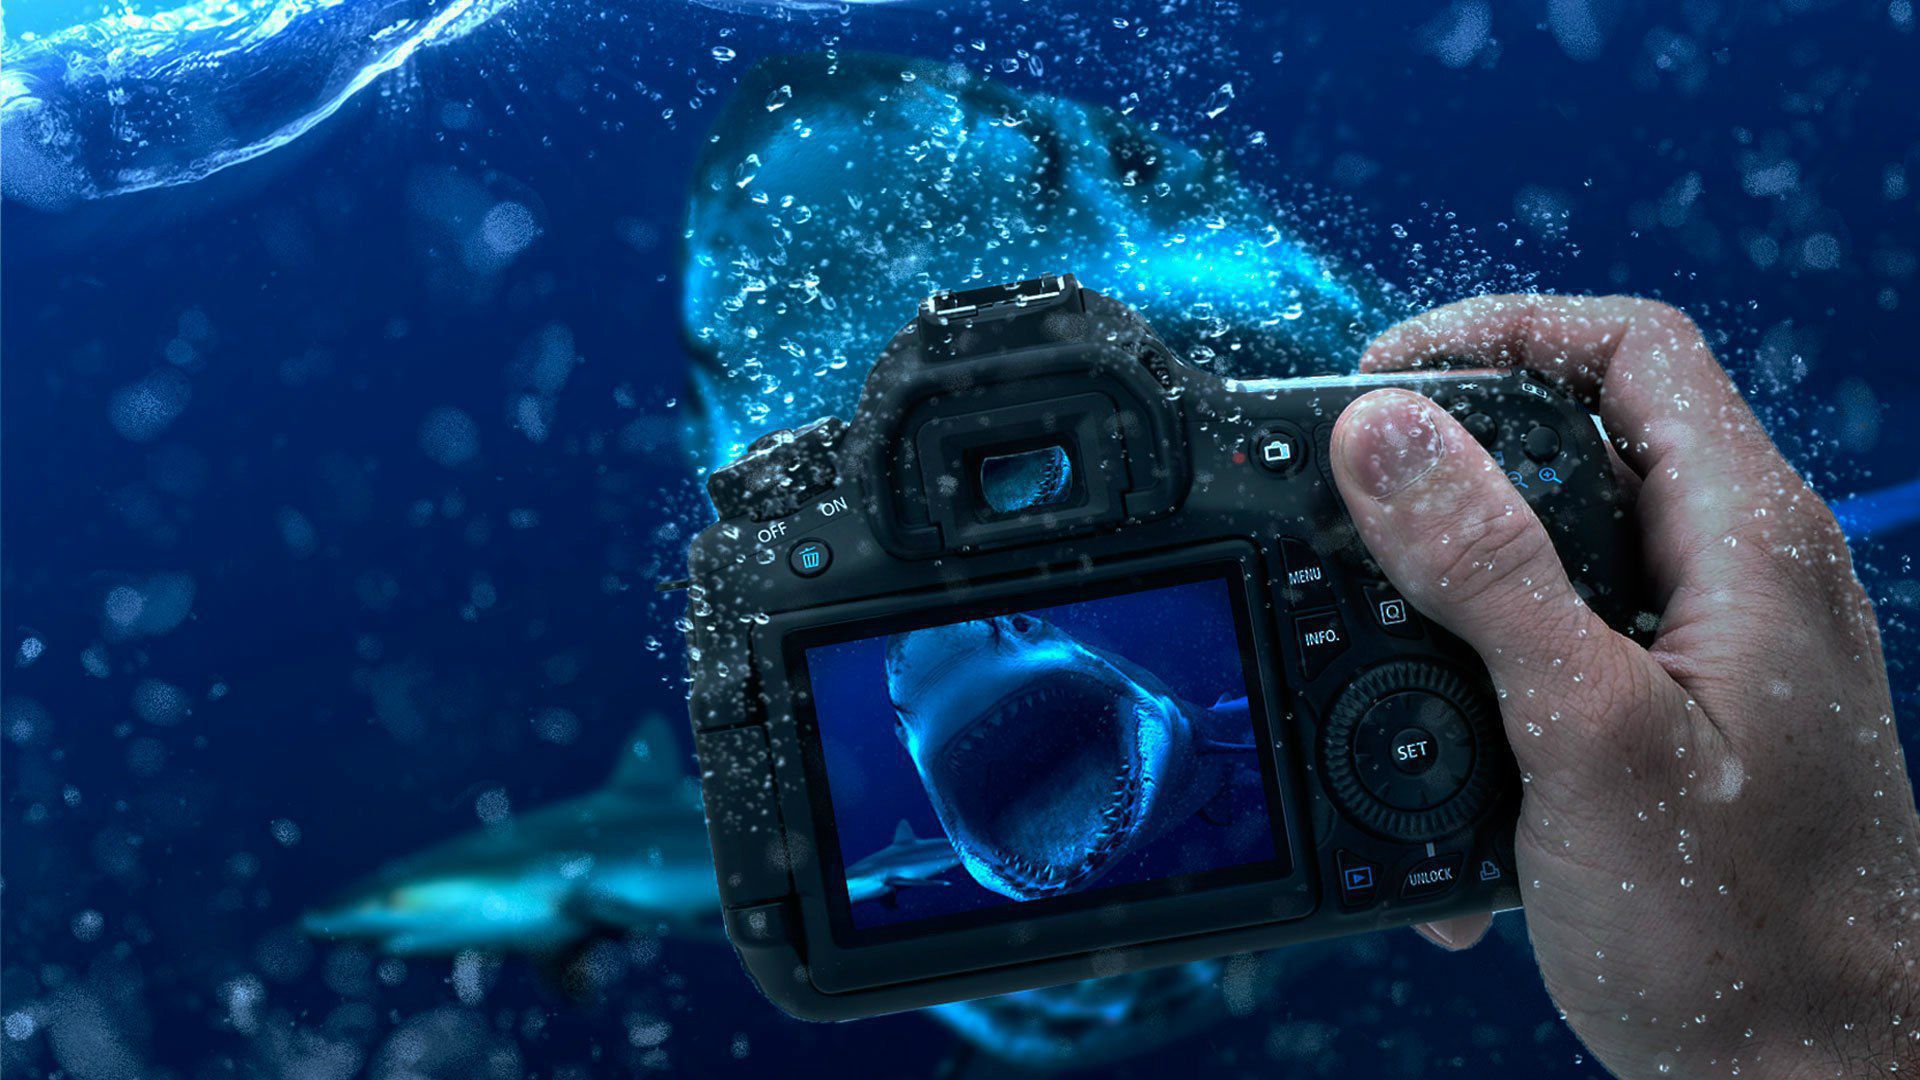 téléchargement gratuit de fond d'écran de caméra,photographier,sous marin,caméra,appareil photo numérique,la photographie